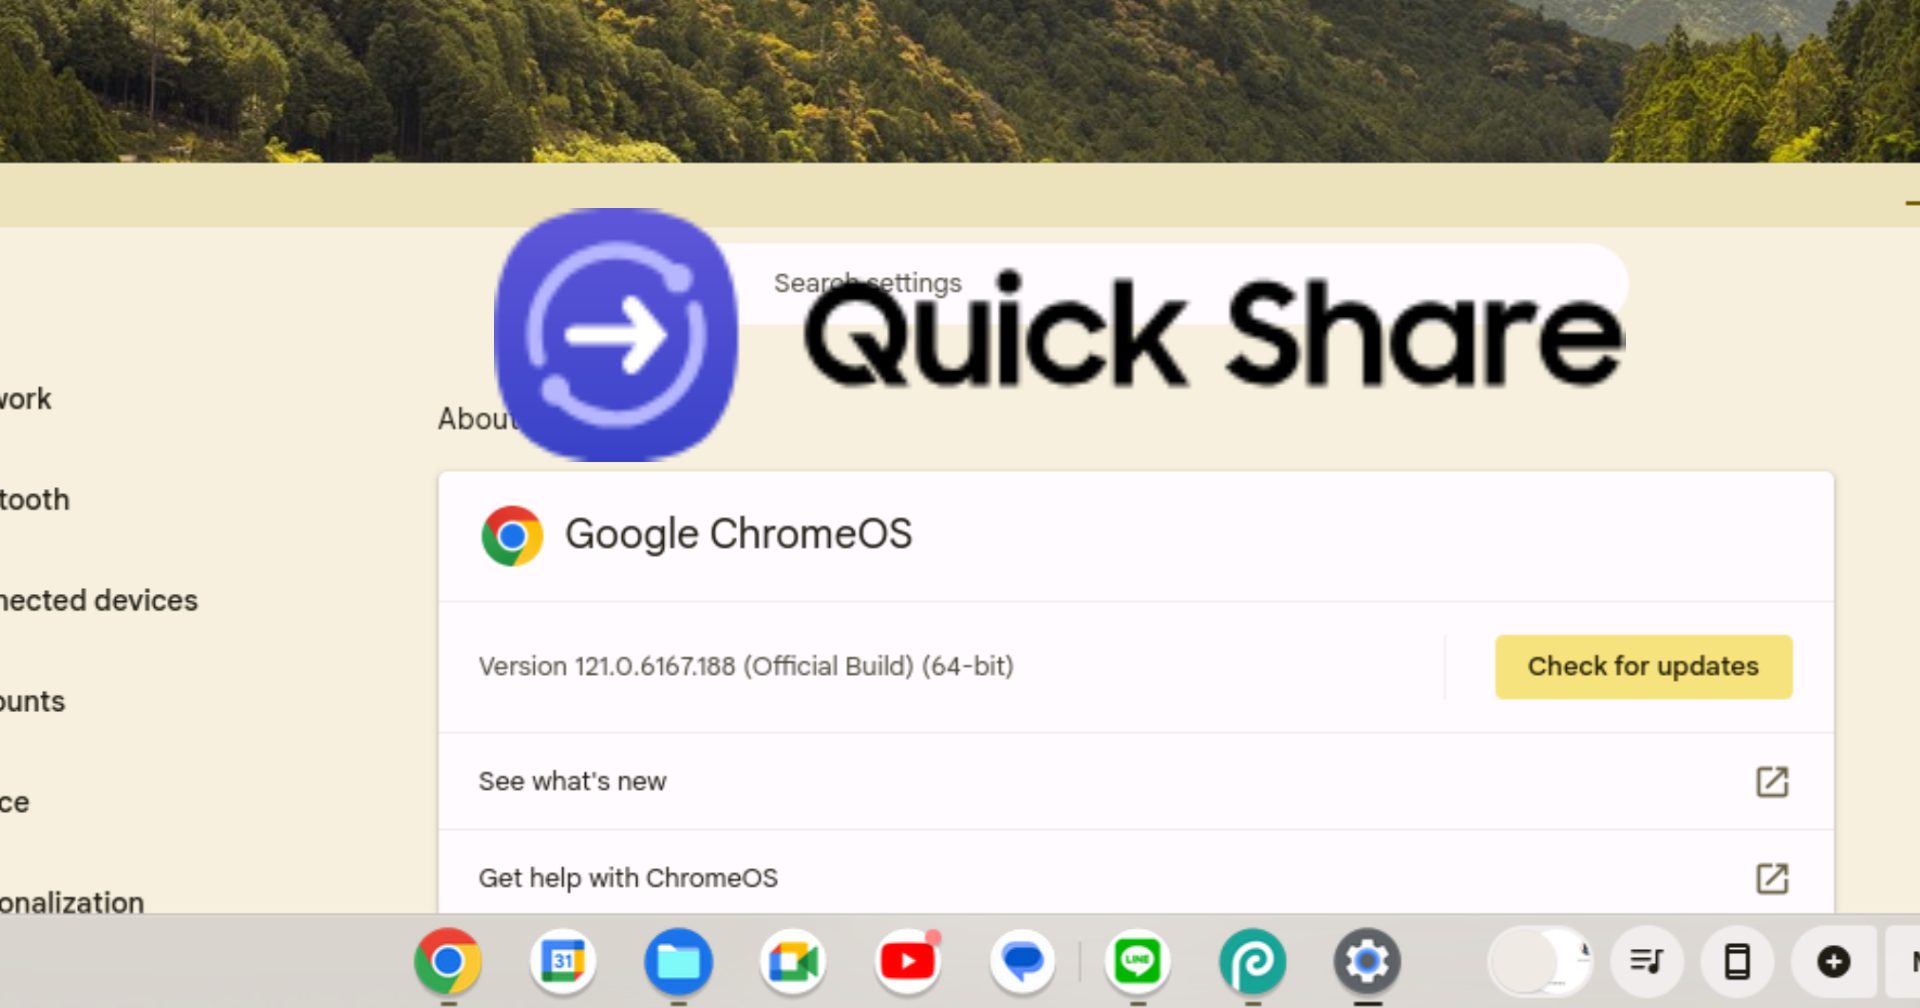 วิธีการใช้งาน Quick Share บน ChromeOS